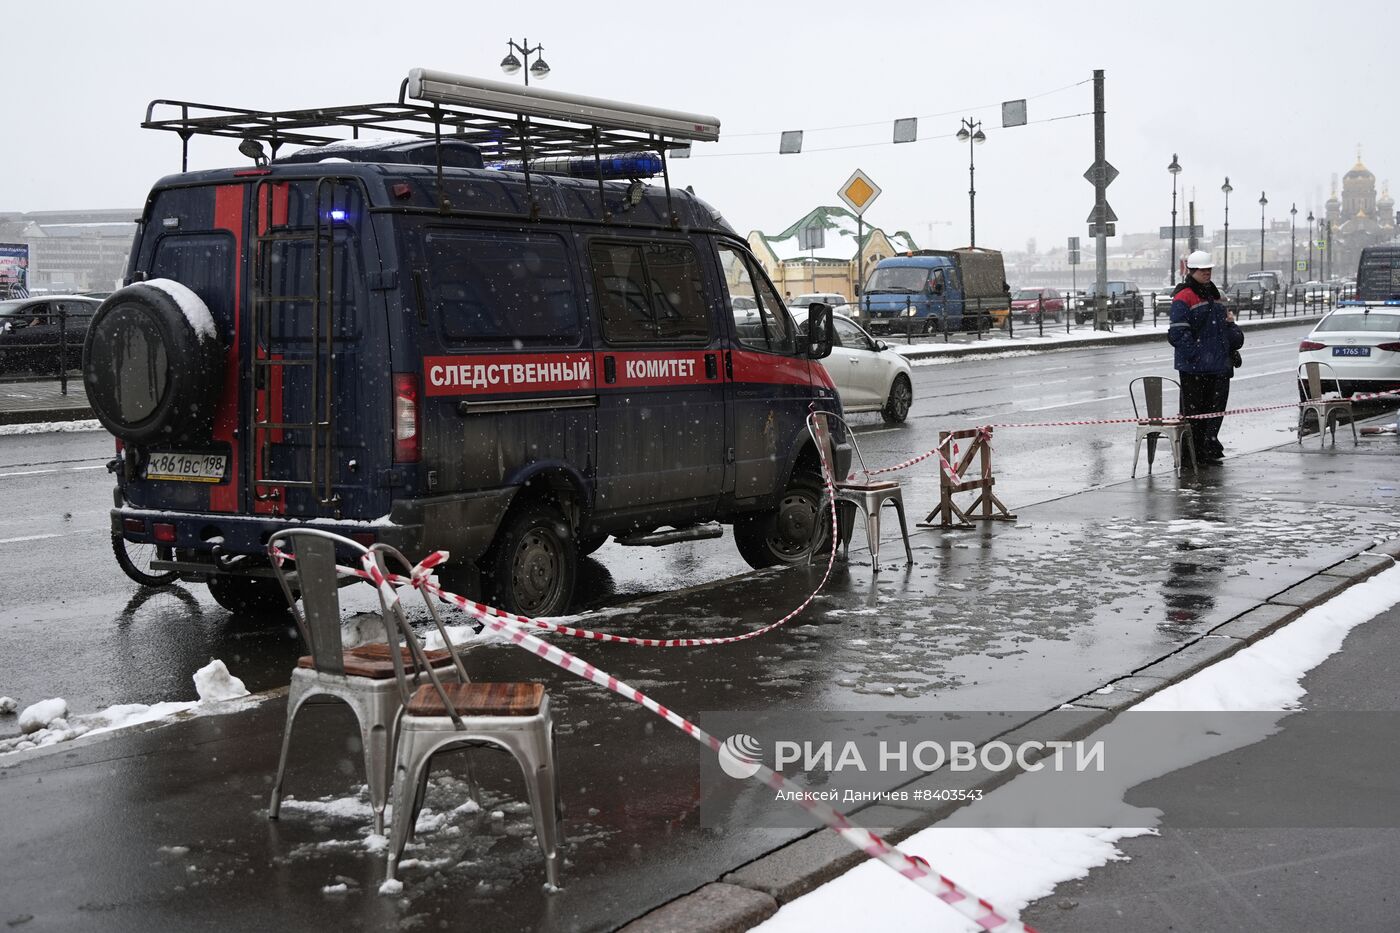 Цветы на месте взрыва на Университетской набережной в Петербурге